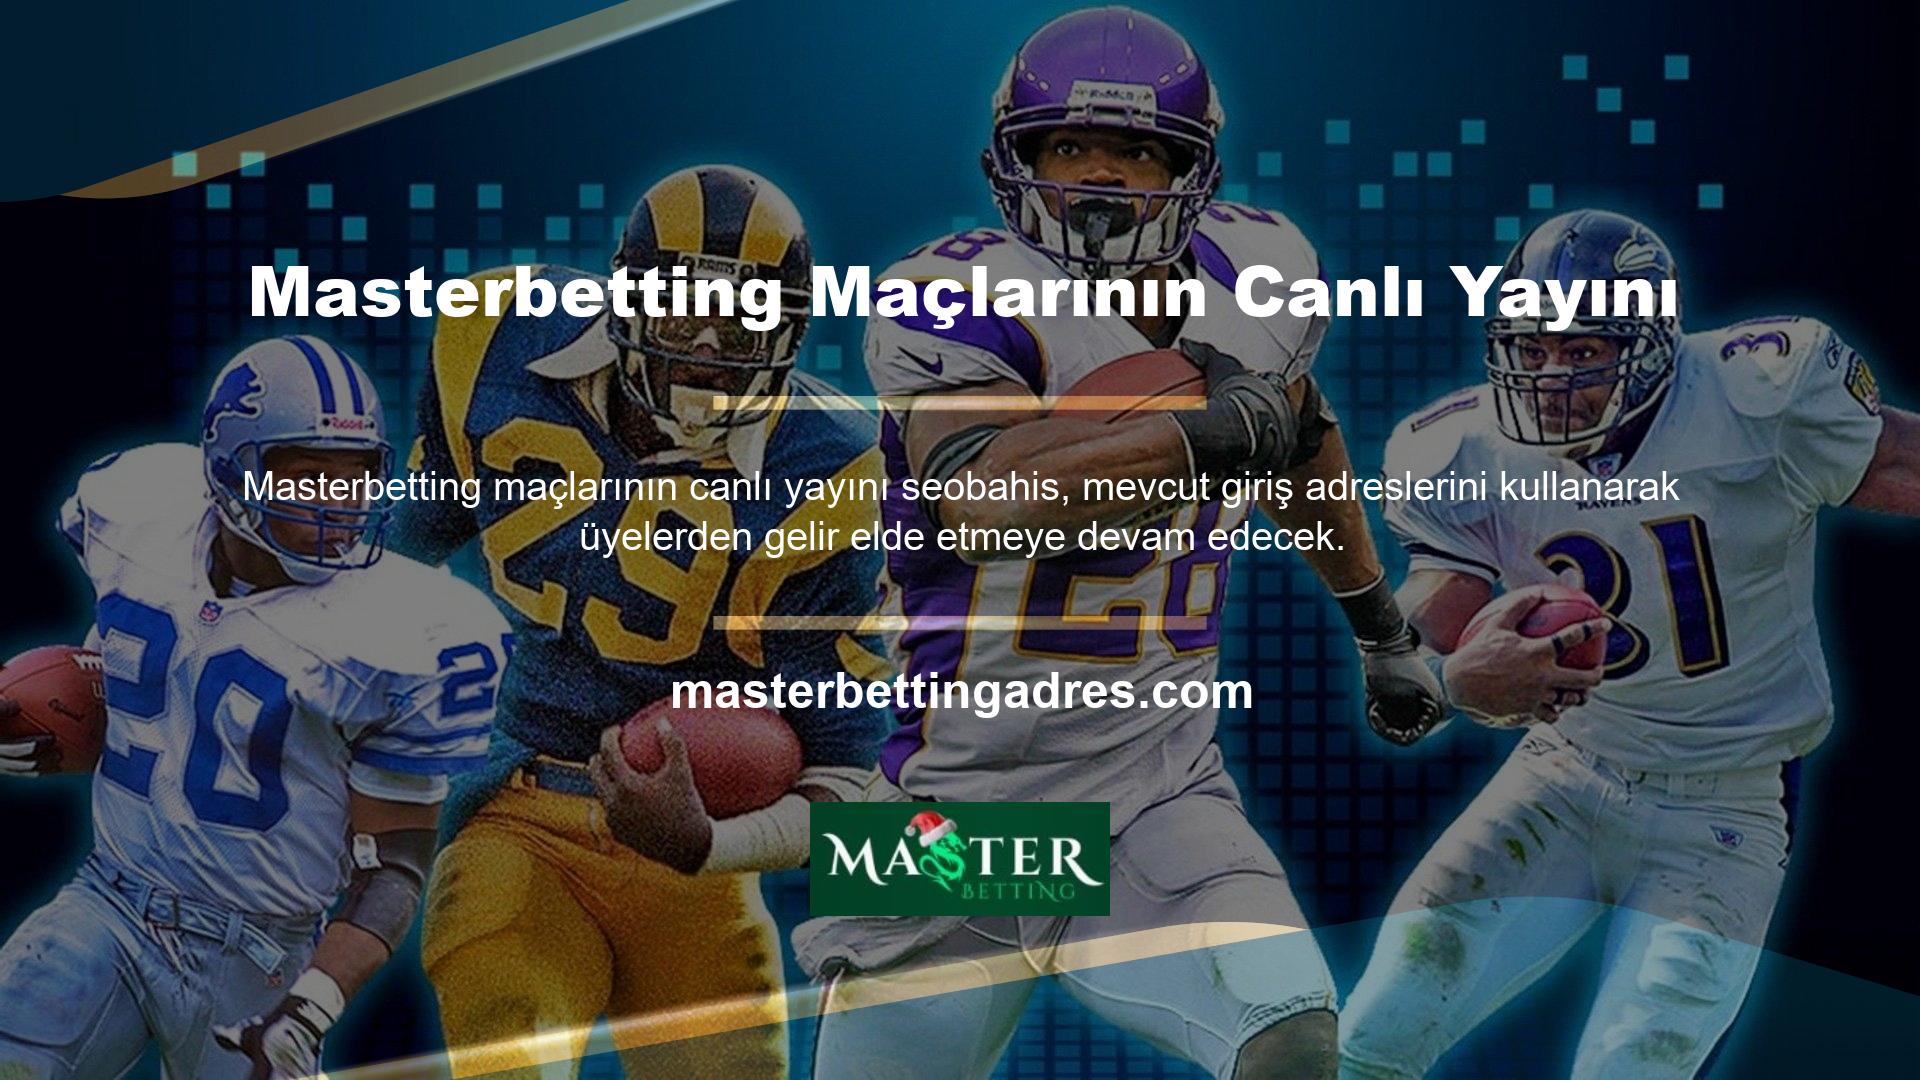 Masterbetting, canlı oyun yayınları yapan, oldukça istikrarlı bir site ve lisanslı oyunlara sahip, kurulduğu günden bu yana birçok insanı siteye çeken bir çevrimiçi bahis ve casino sitesidir